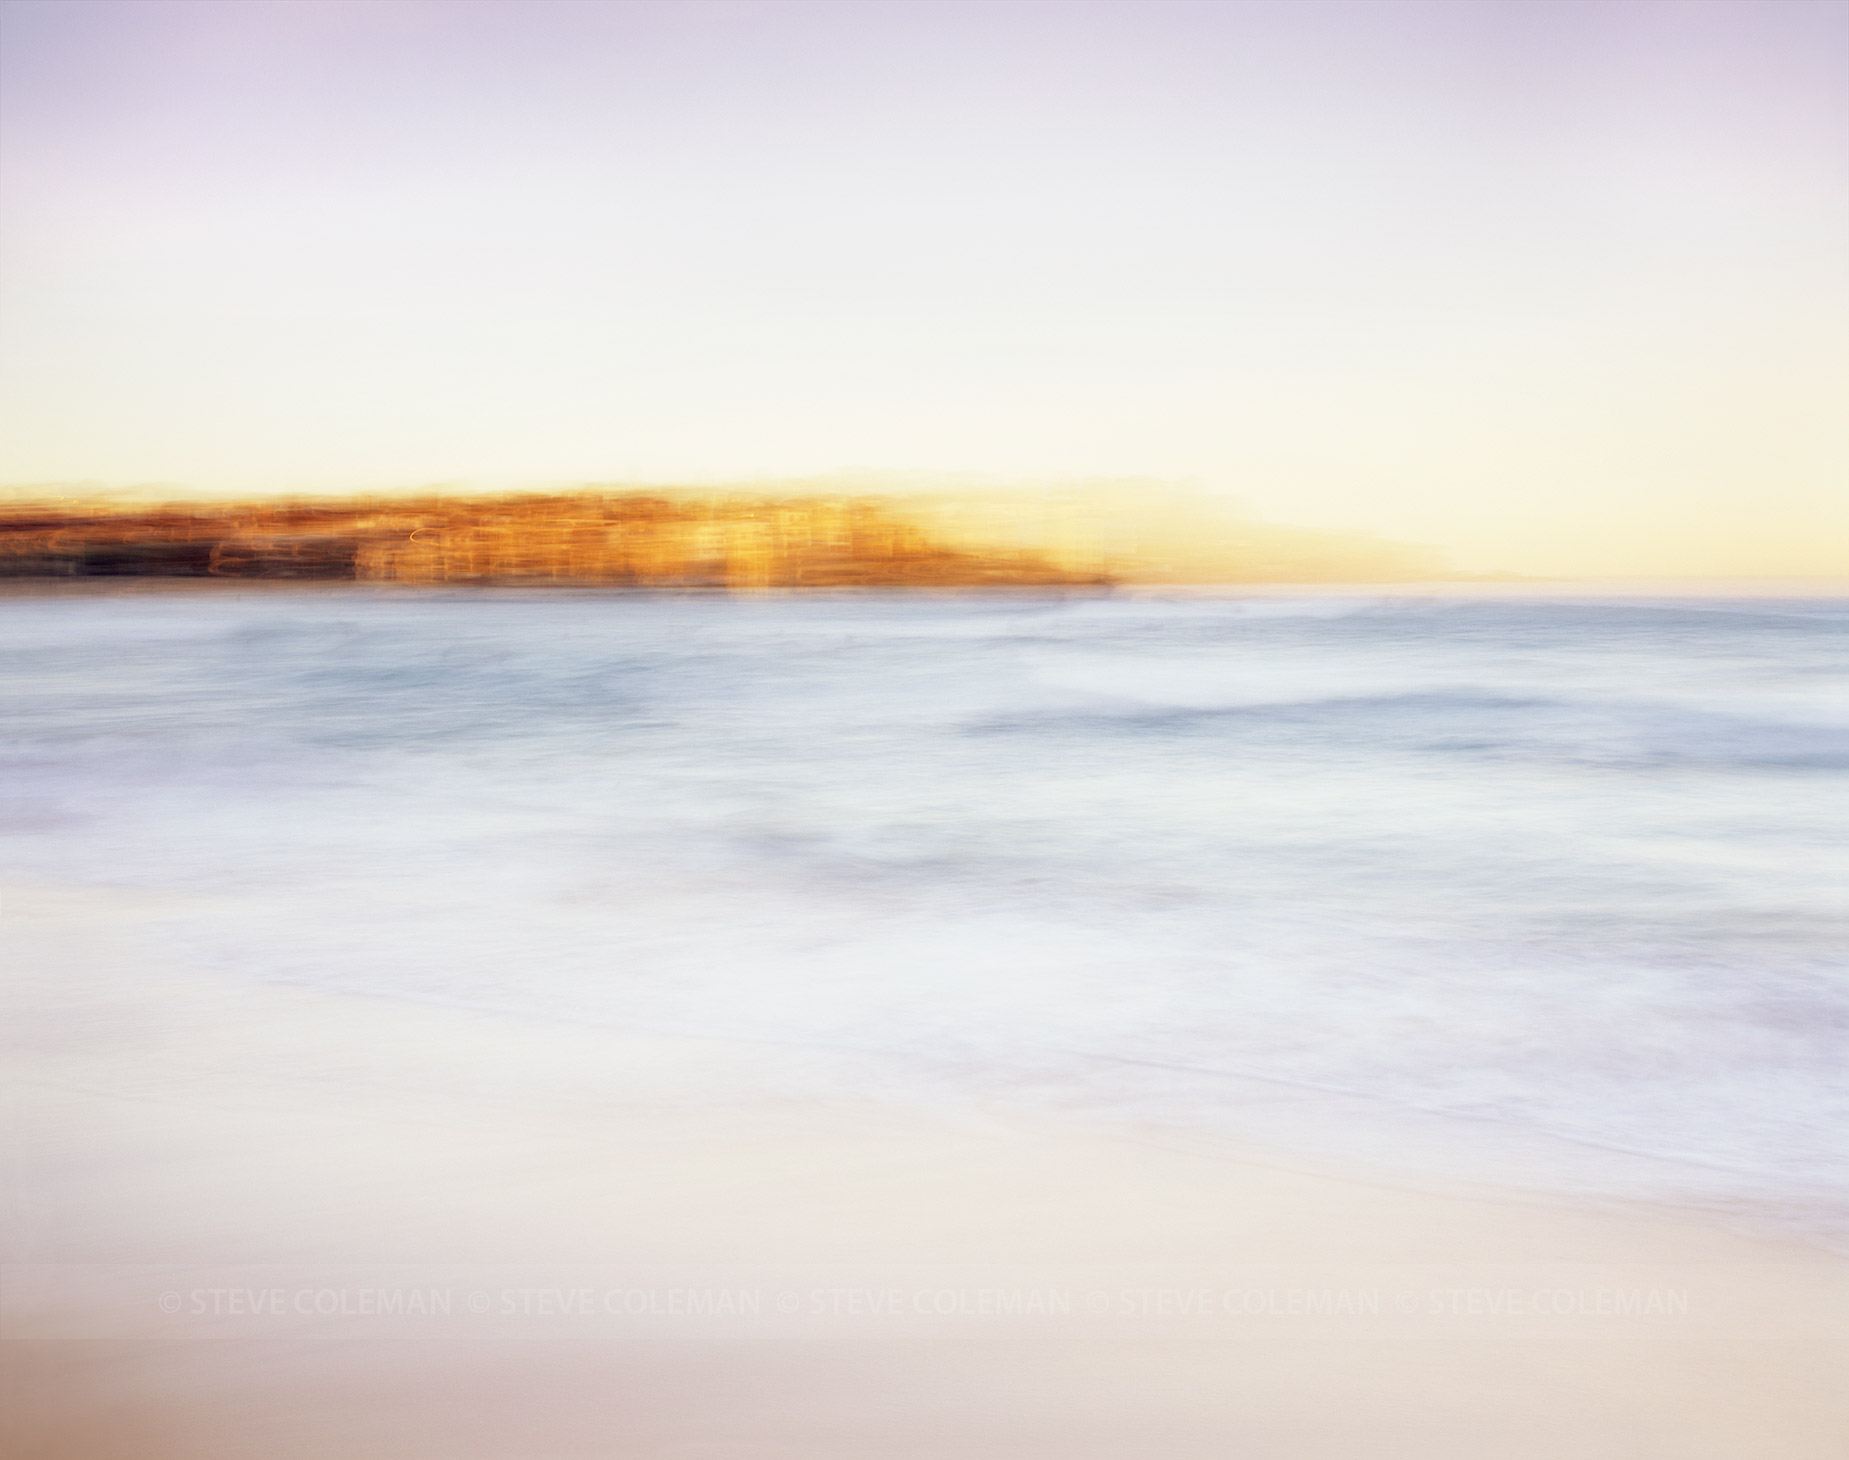 Bondi Beach, Australia.